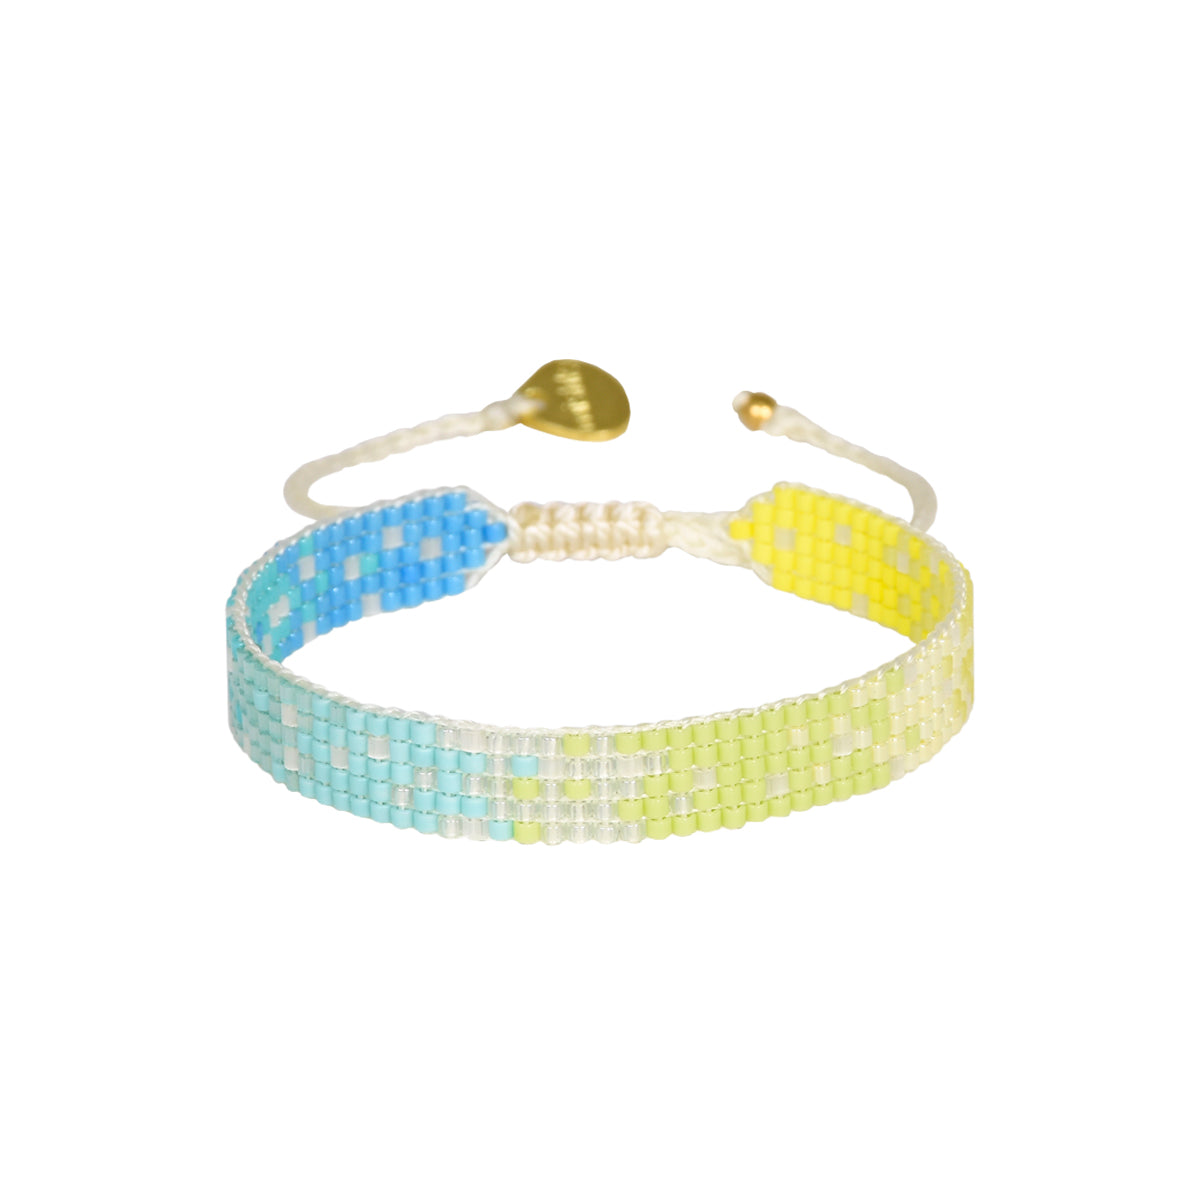 Sunset adjustable bracelet 12060 S